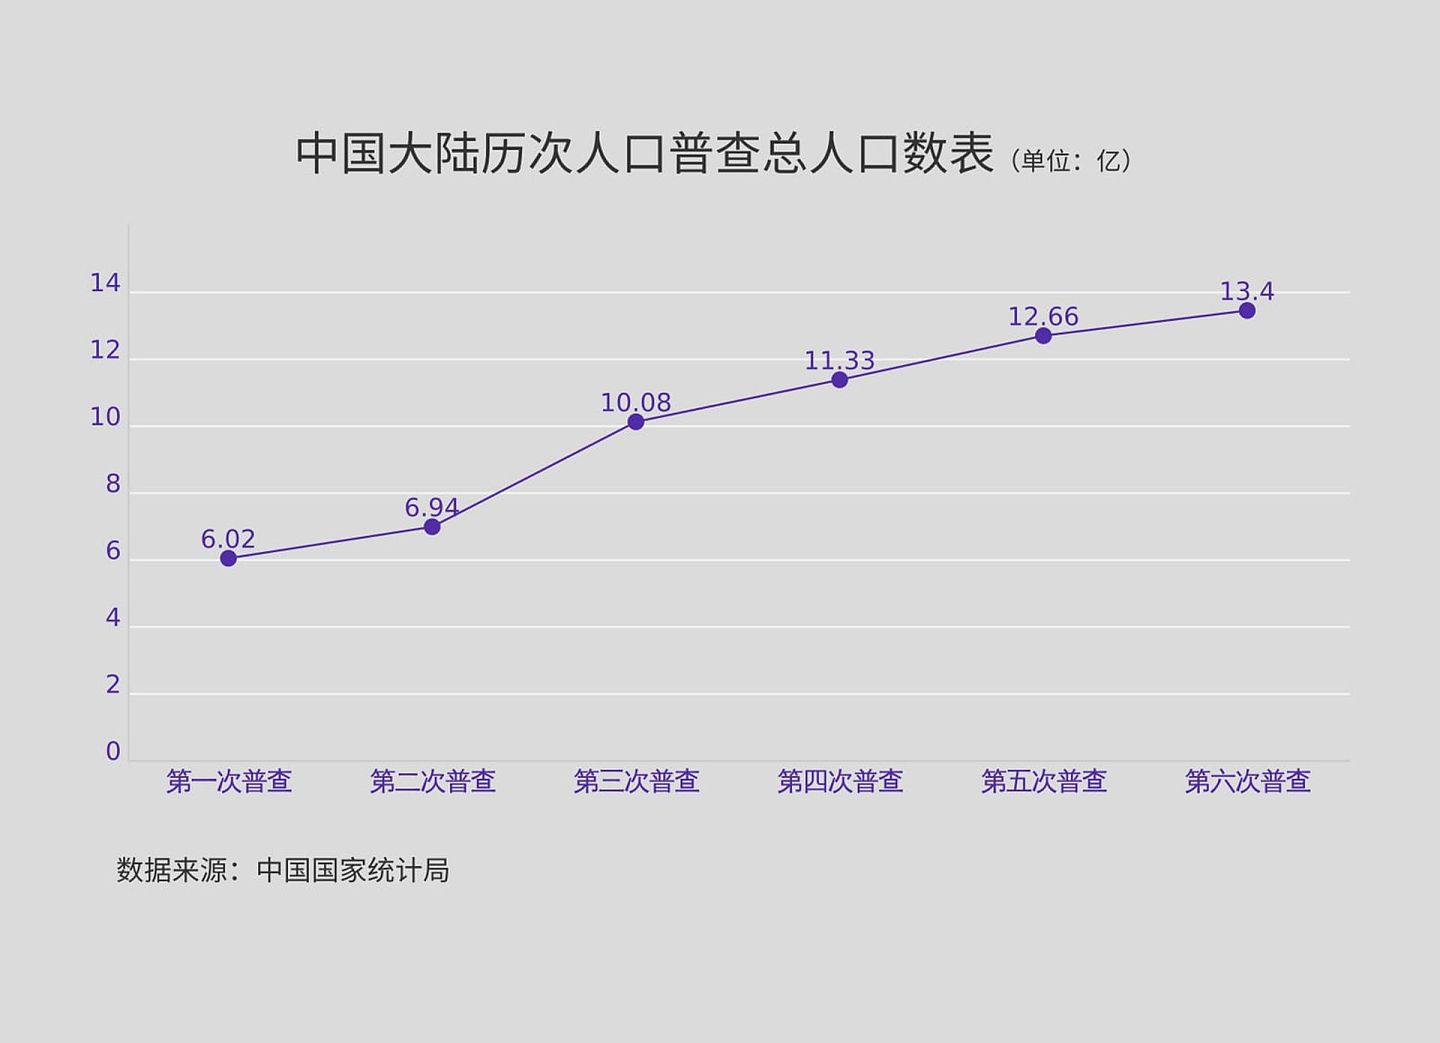 中国六次人口普查数据。（多维新闻制作）